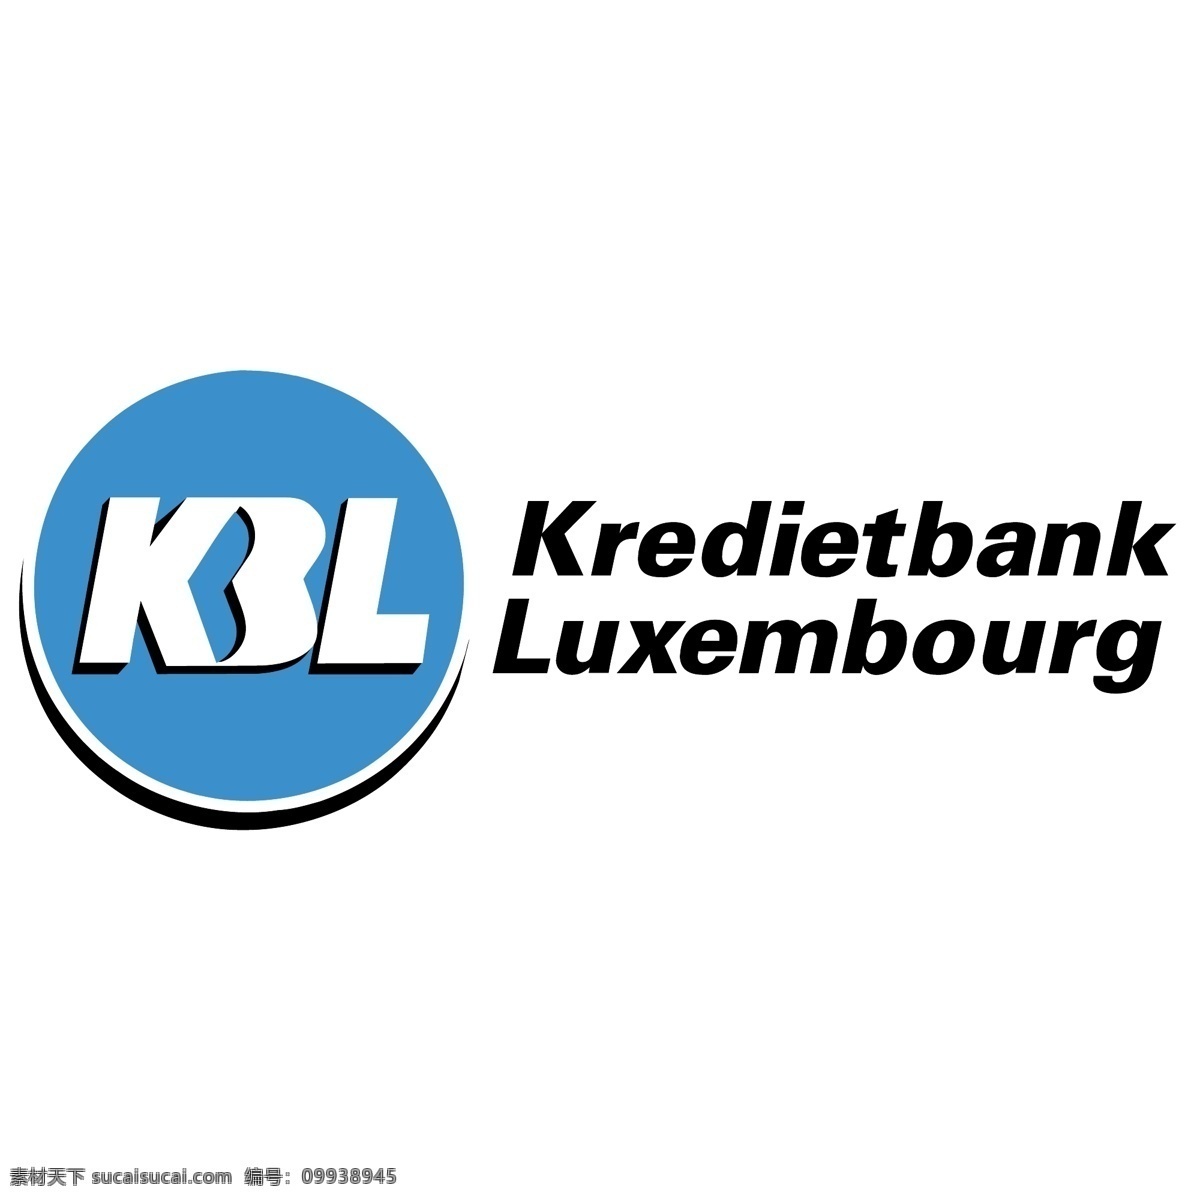 信贷 银行 卢森堡 免费 kbl 标志 标识 psd源文件 logo设计